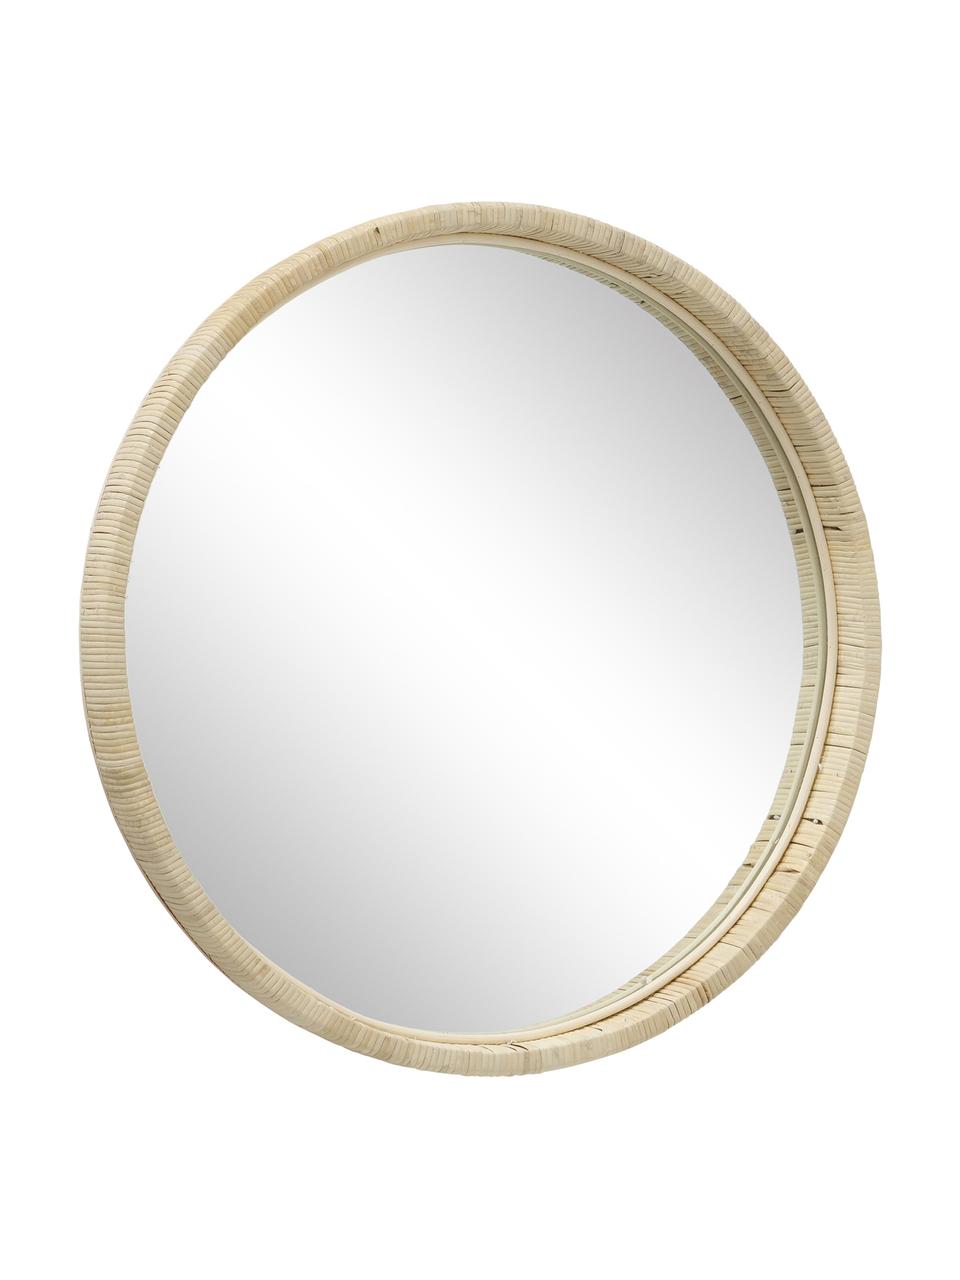 Runder Wandspiegel Yori mit Bambusrahmen, Rahmen: Bambus, Spiegelfläche: Spiegelglas, Beige, Ø 50 cm